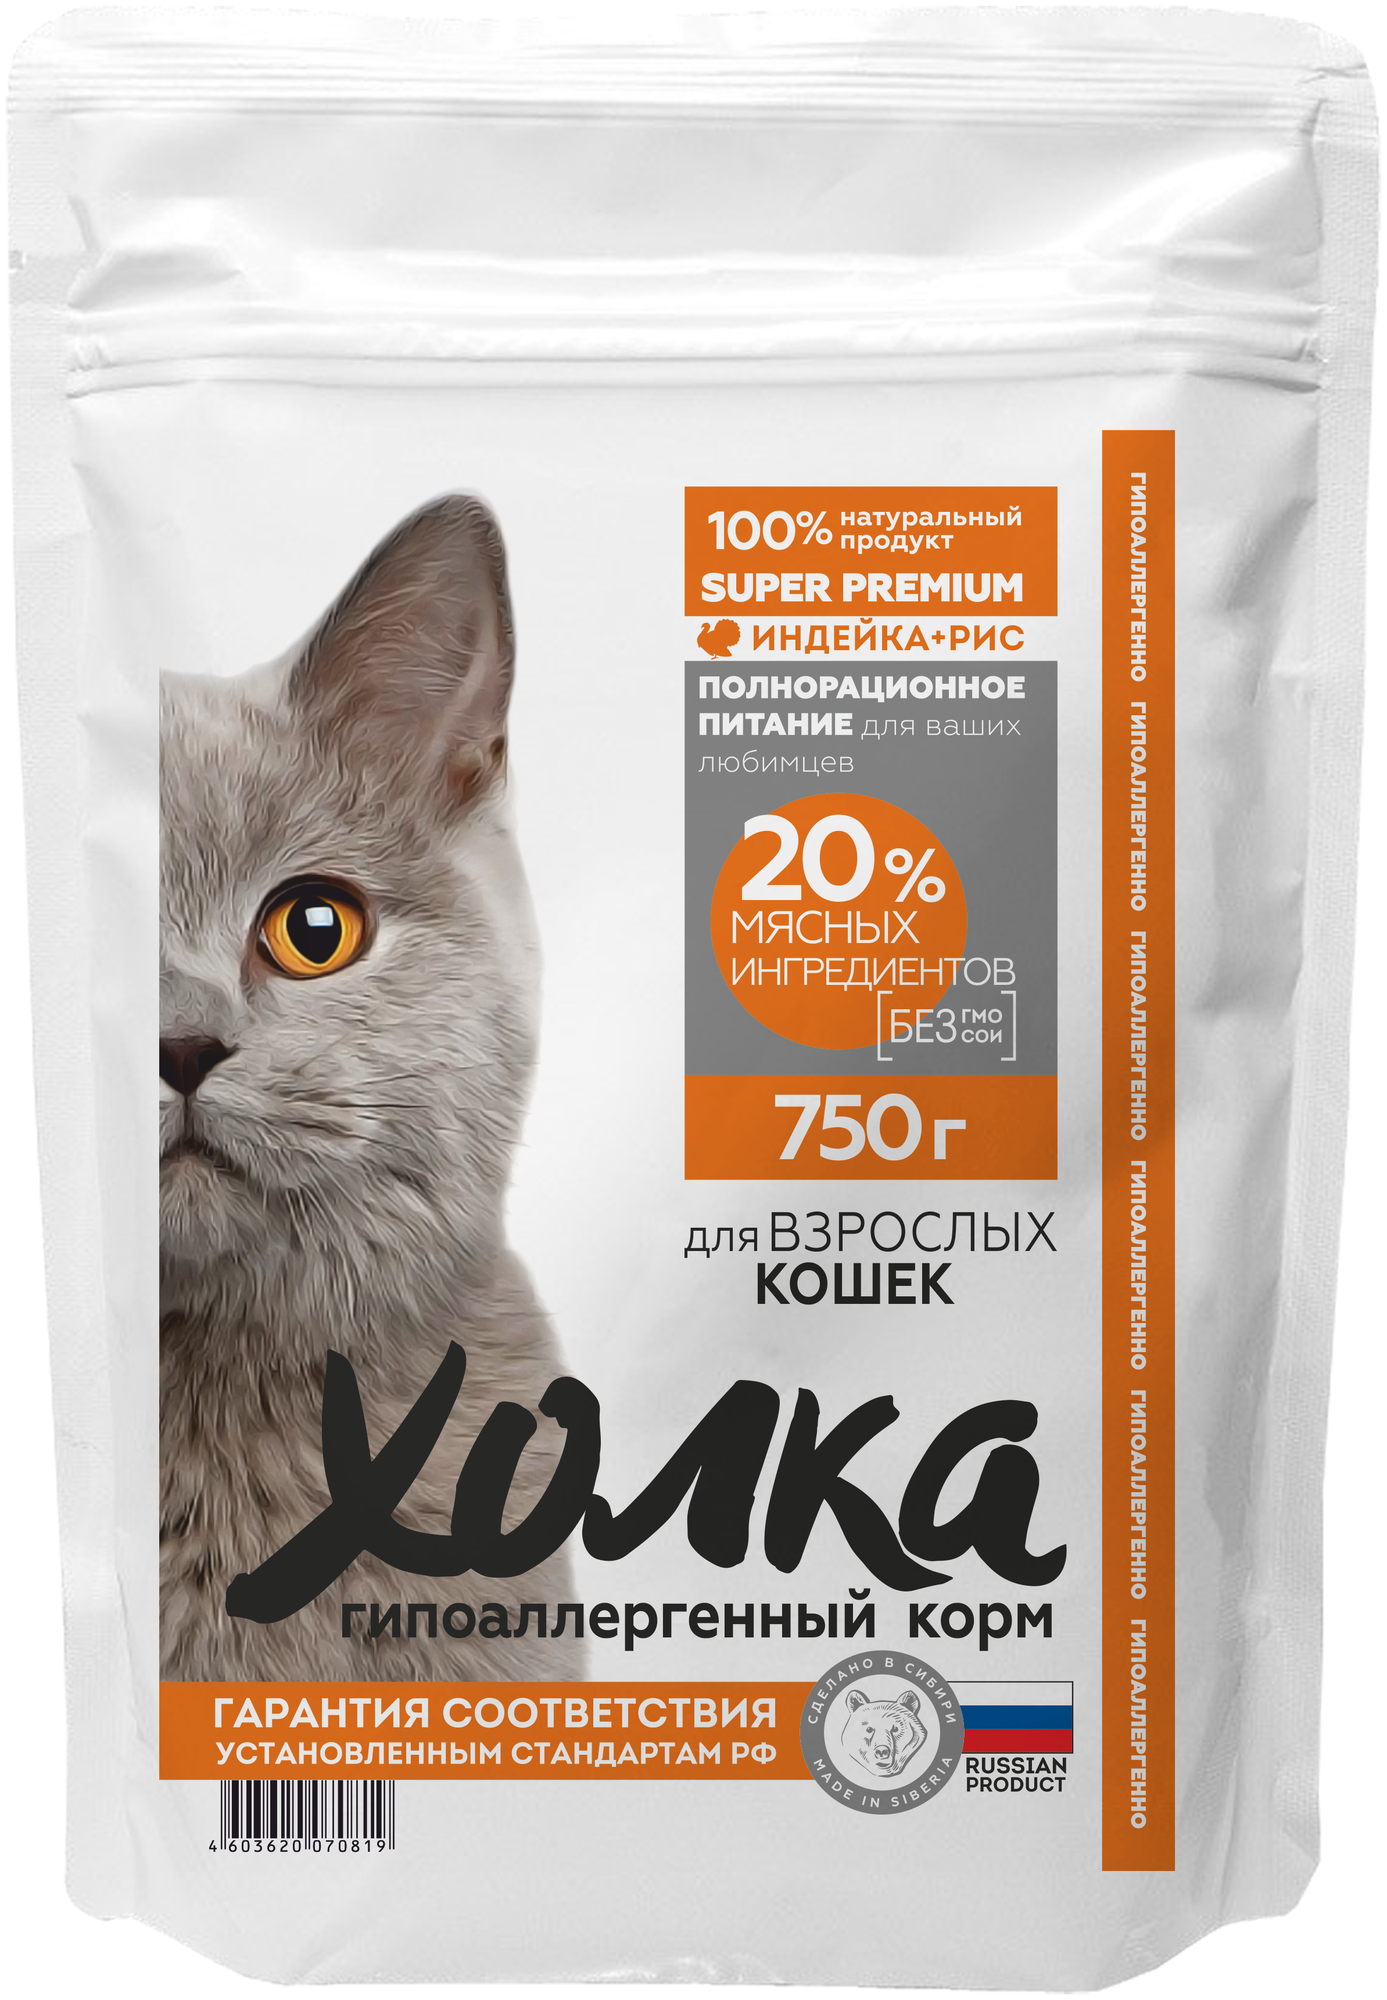 Гипоаллергенный полнорационный корм "Холка" для кошек 20% мясных ингредиентов 750гр. - фотография № 1